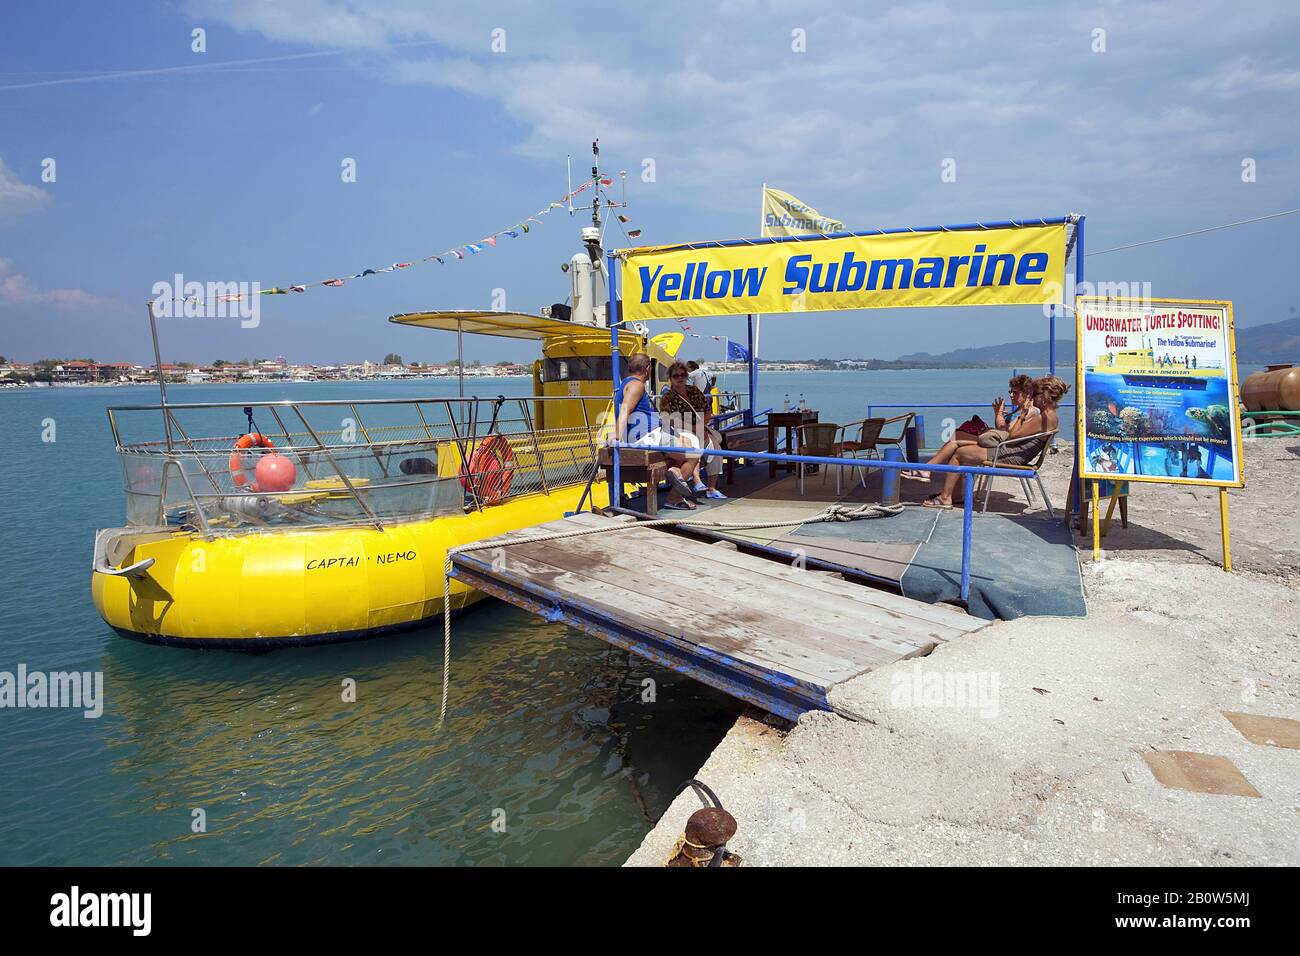 Unterseeboot im Hafen von Laganas, Zakynthos, Griechenland | sous-marin jaune au port de Laganas, île de Zakynthos, Grèce Banque D'Images